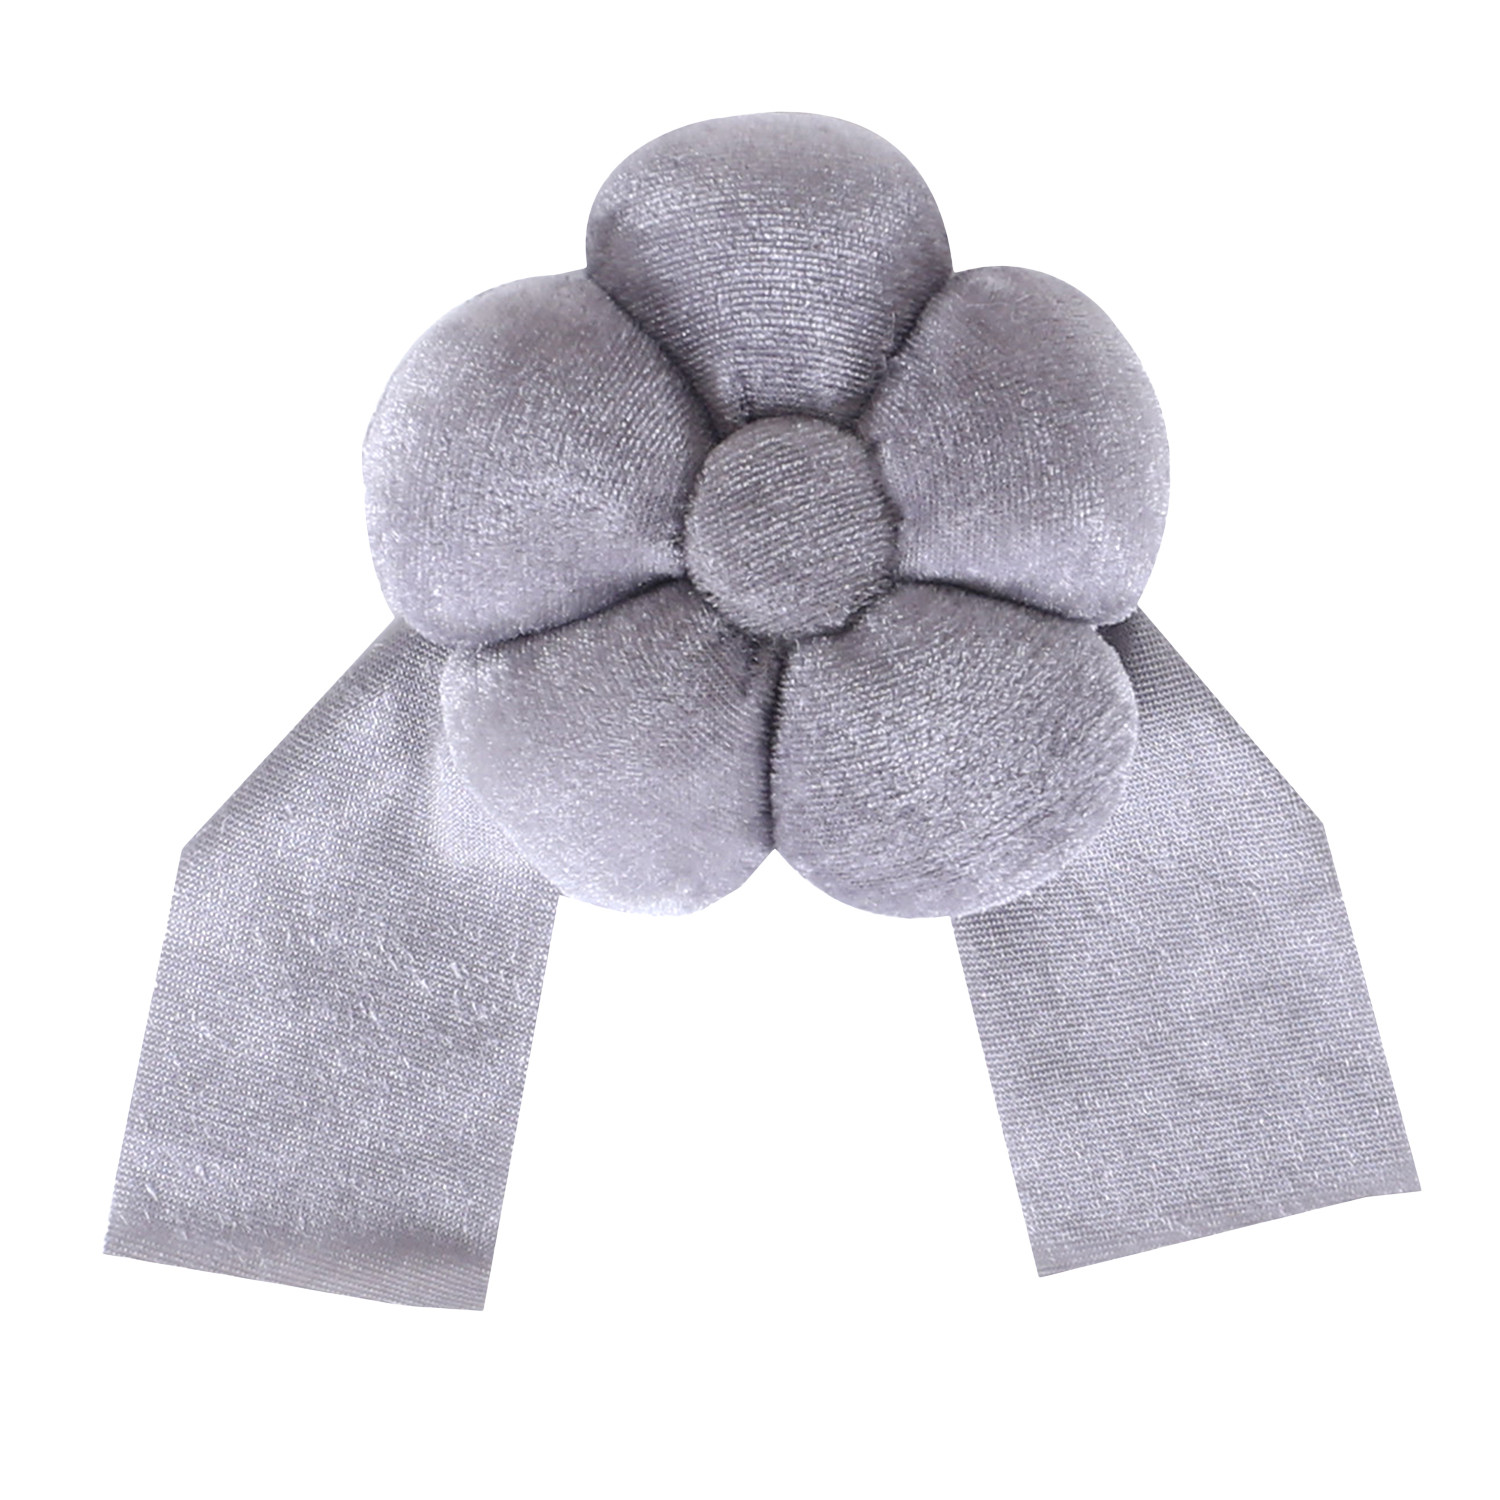 Kuber Industries Curtain Tassel | Velvet Flower Tieback Curtain Tassel |Tassel for Home Decorative | 2 Pieces Drape Tie Back Tassel for Home | Office | Gray